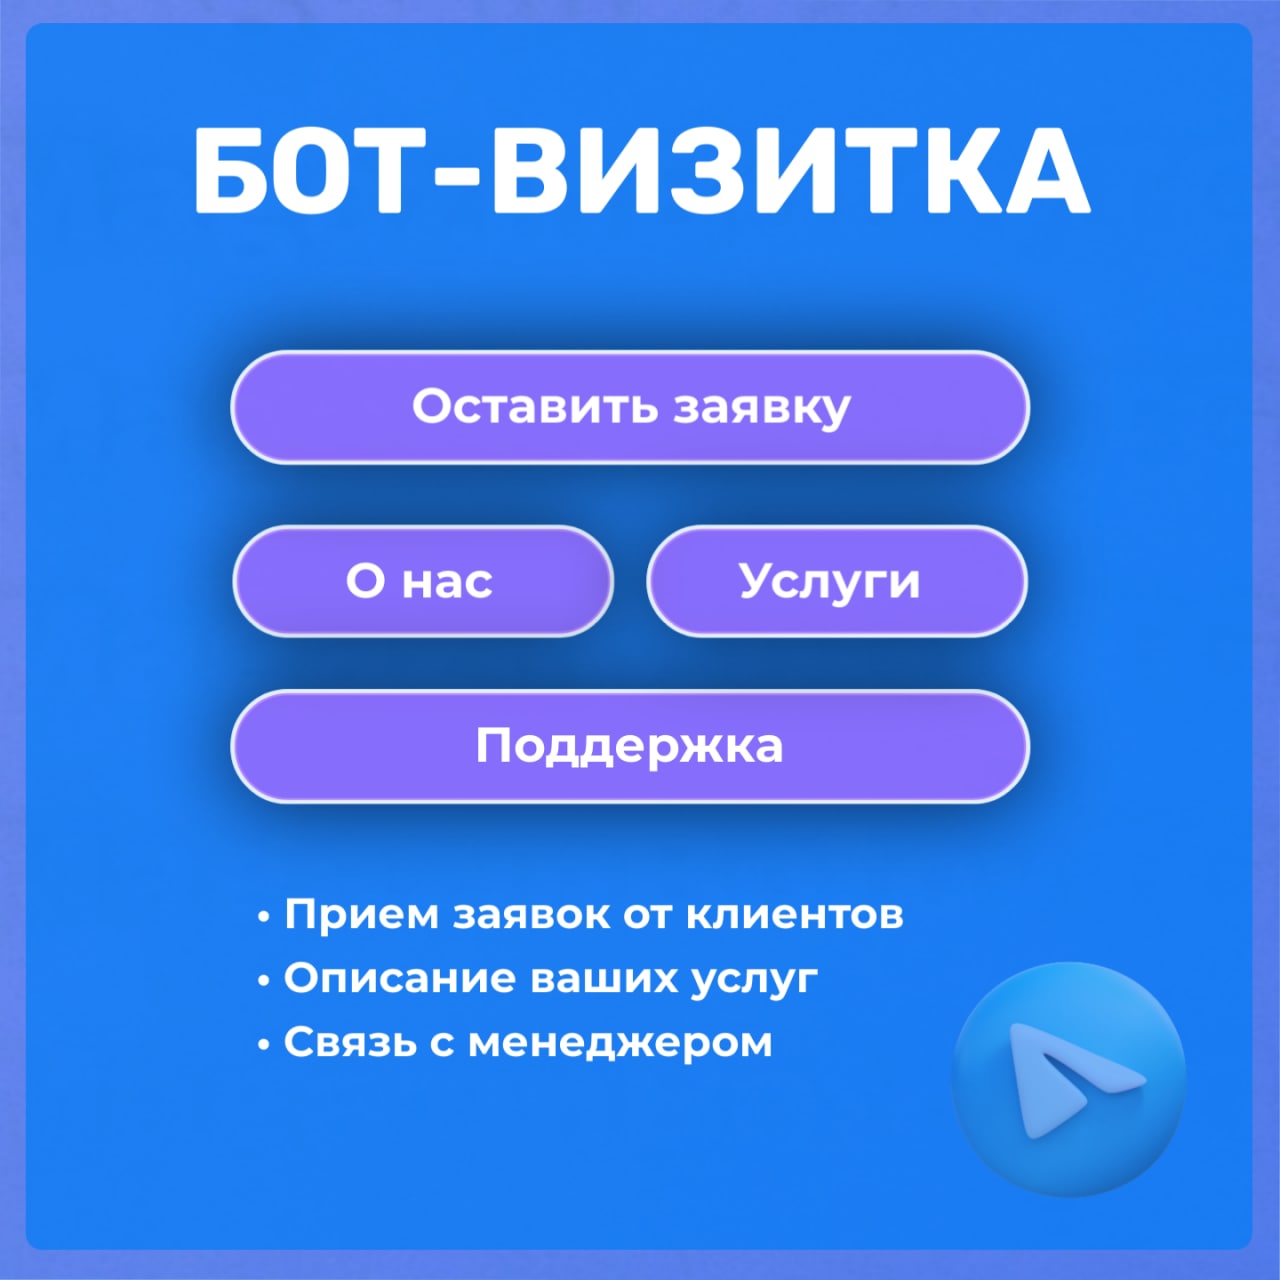 Бот телеграмма для русского языка фото 108